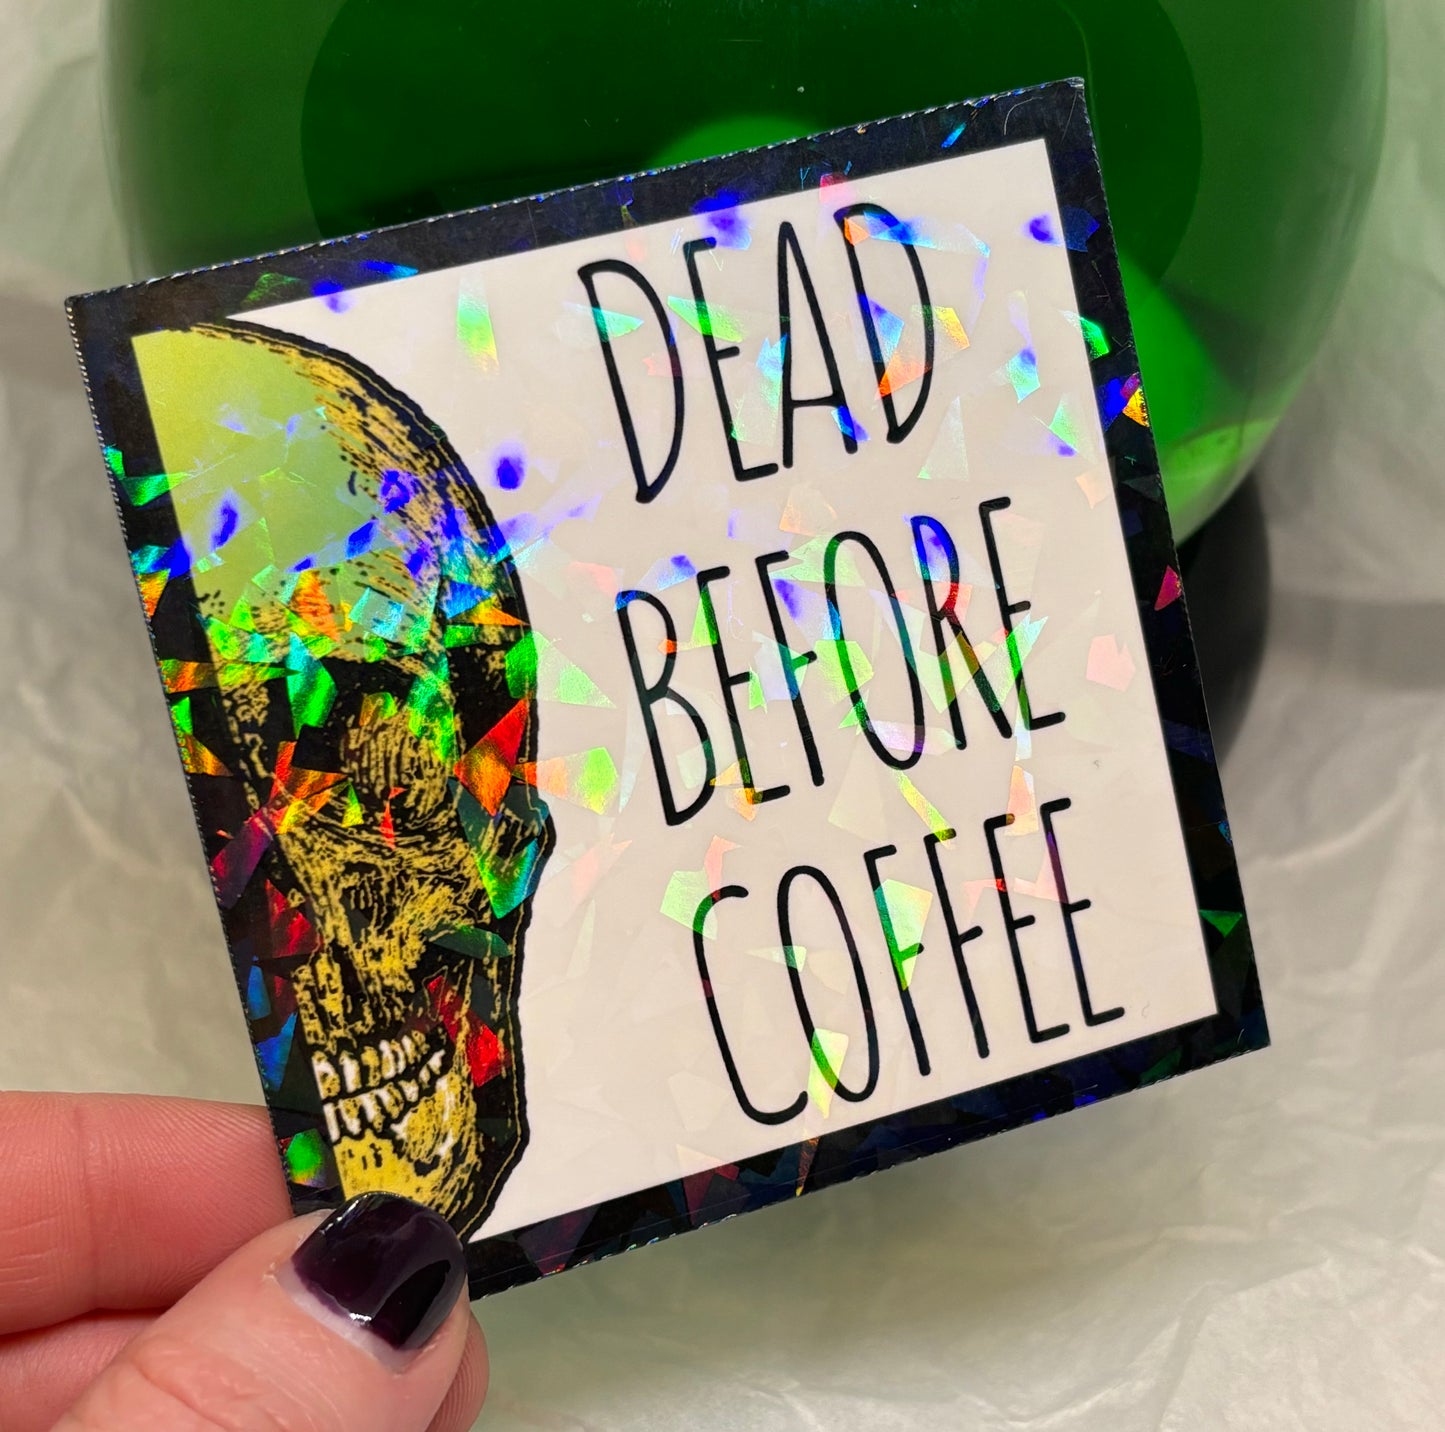 Dead Before Coffee Sticker